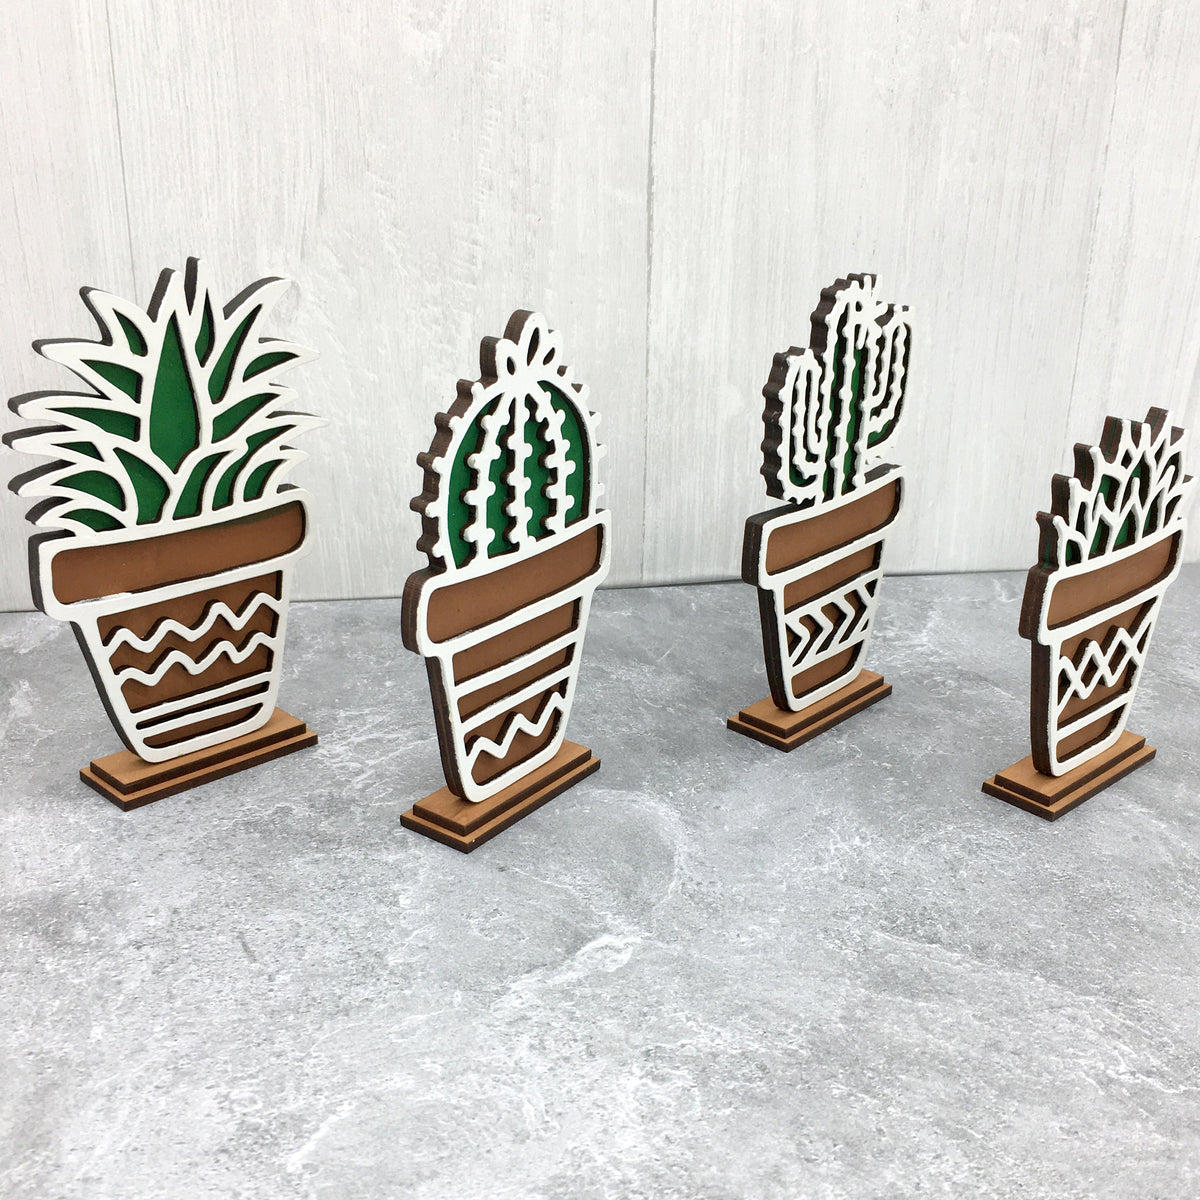 DIY Wooden Standing Cacti